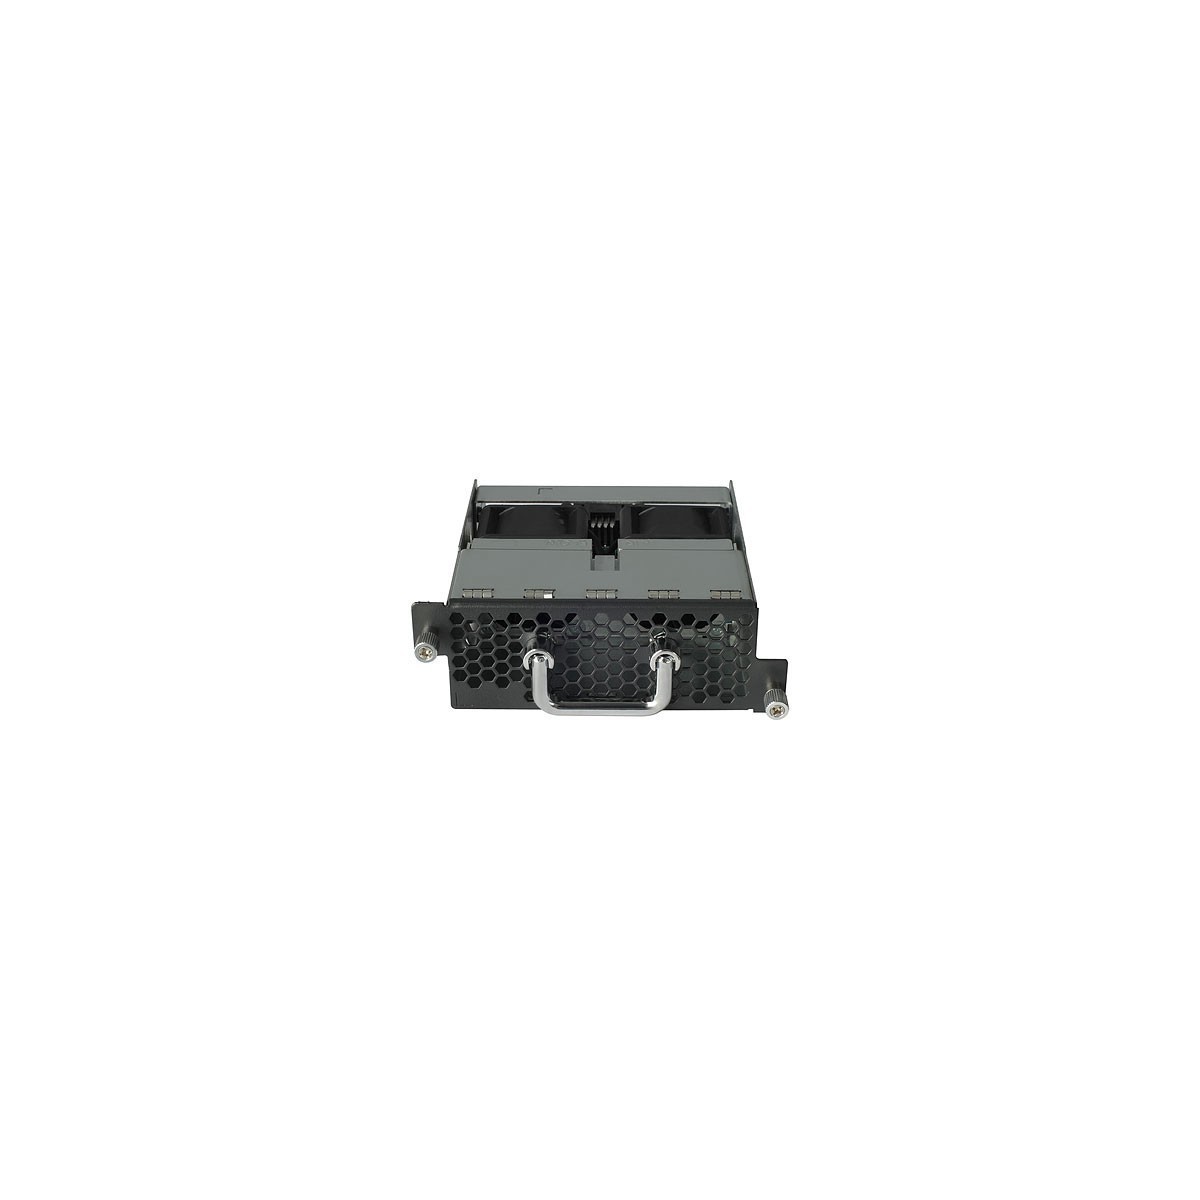 HPE 5406R zl2 Switch Fan Tray - HP 5406R zl2 - 49.8 mm - 463 mm - 257.8 mm - 1.08 kg